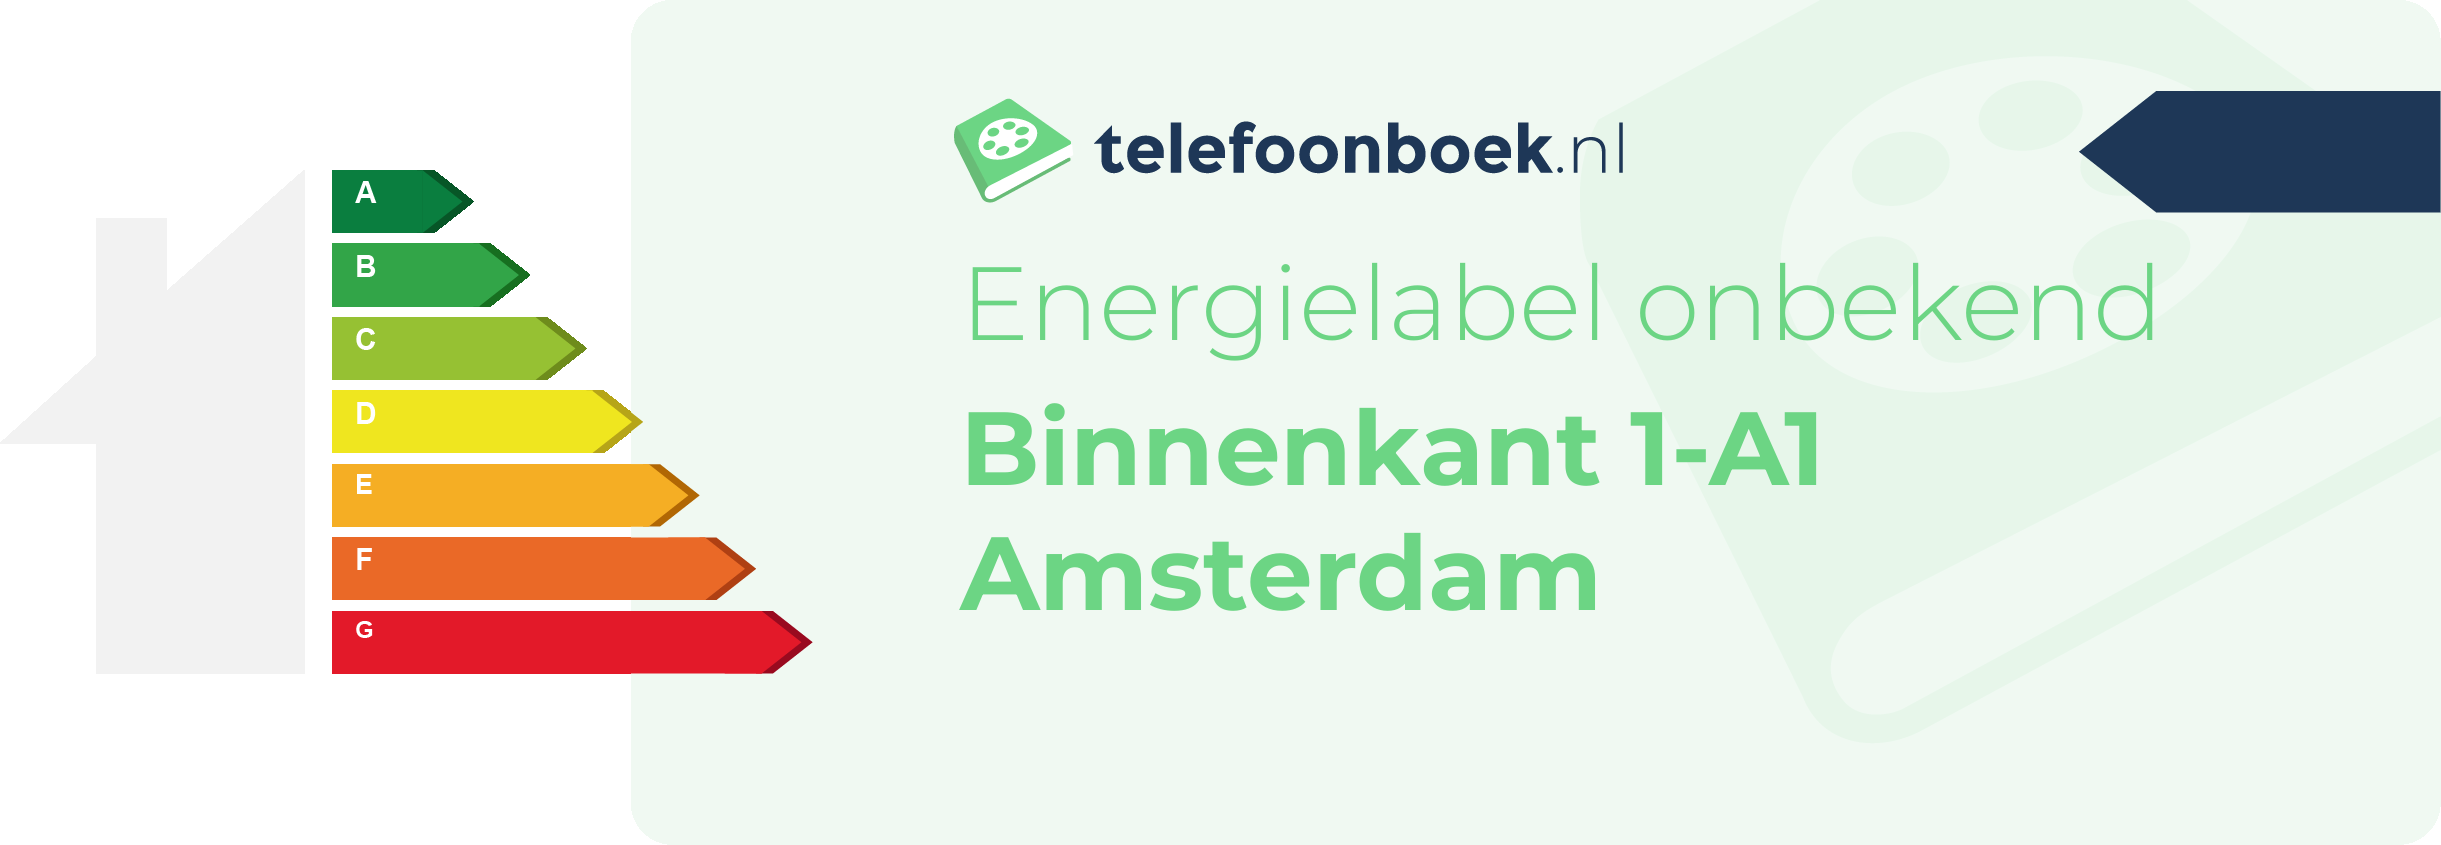 Energielabel Binnenkant 1-A1 Amsterdam